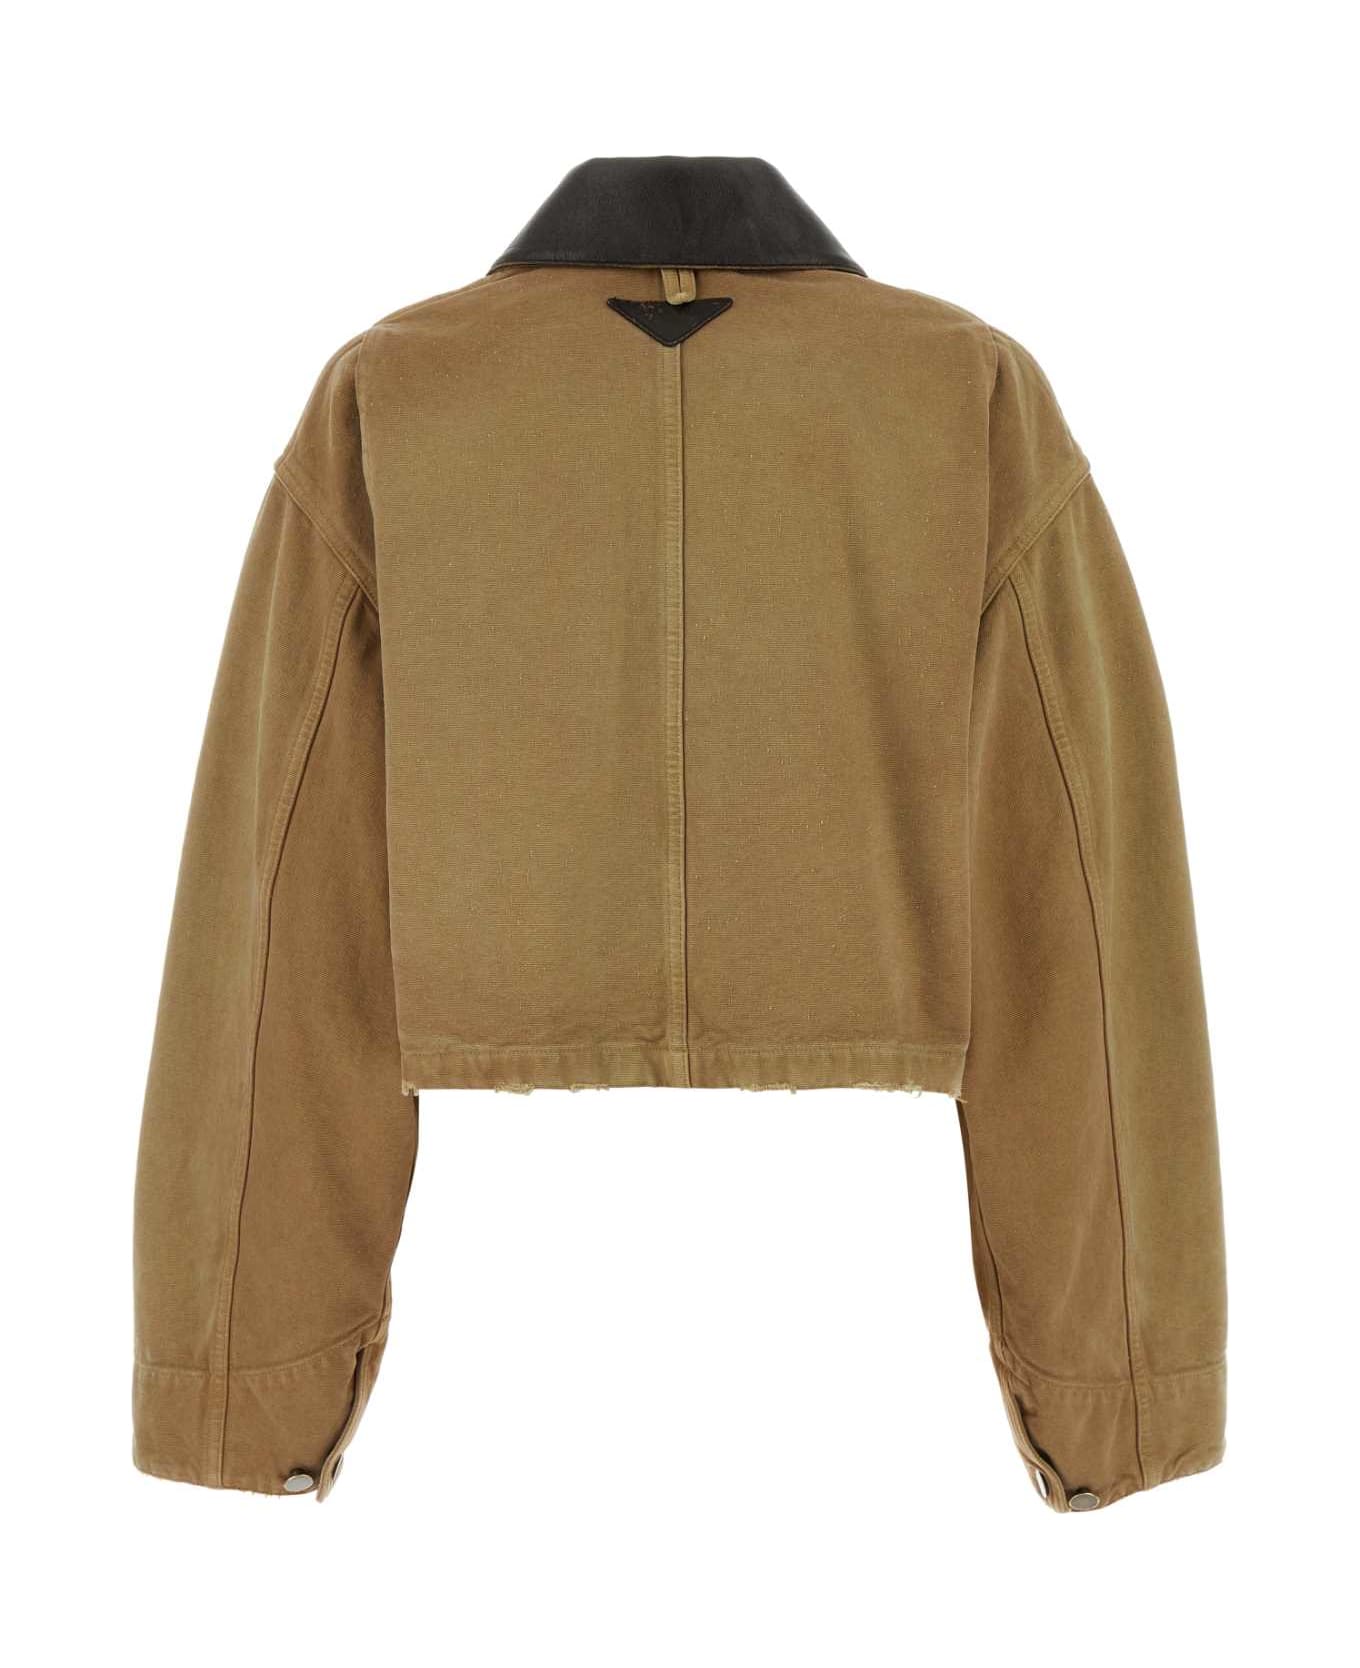 Prada Camel Cotton Jacket - BEIGE